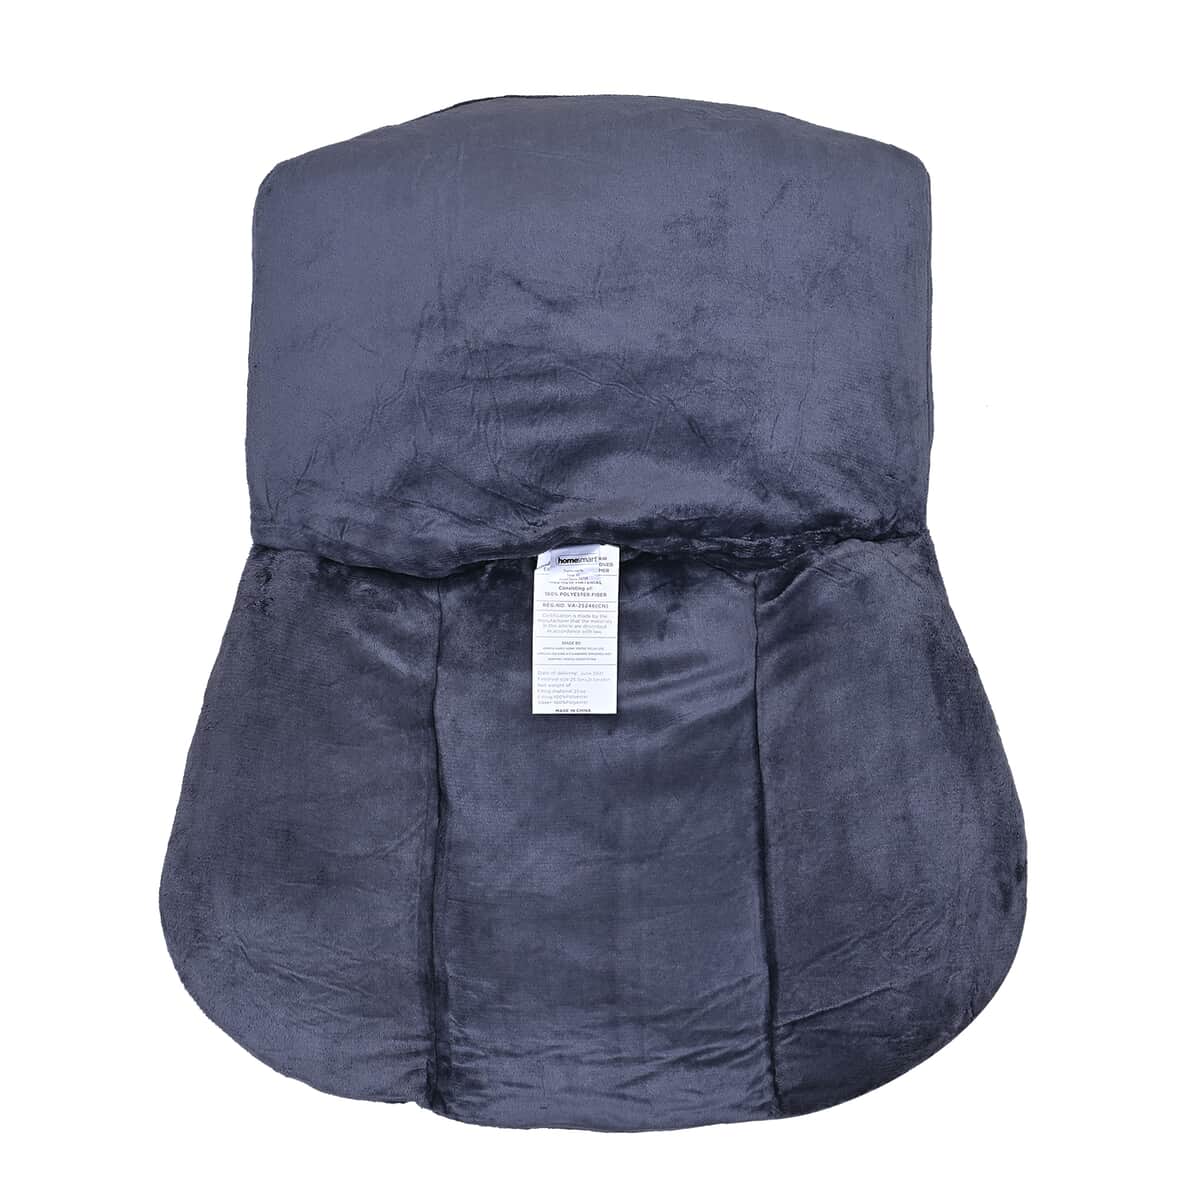 Velvet Soft Back Support Cushion - Black (Microfiber) image number 6